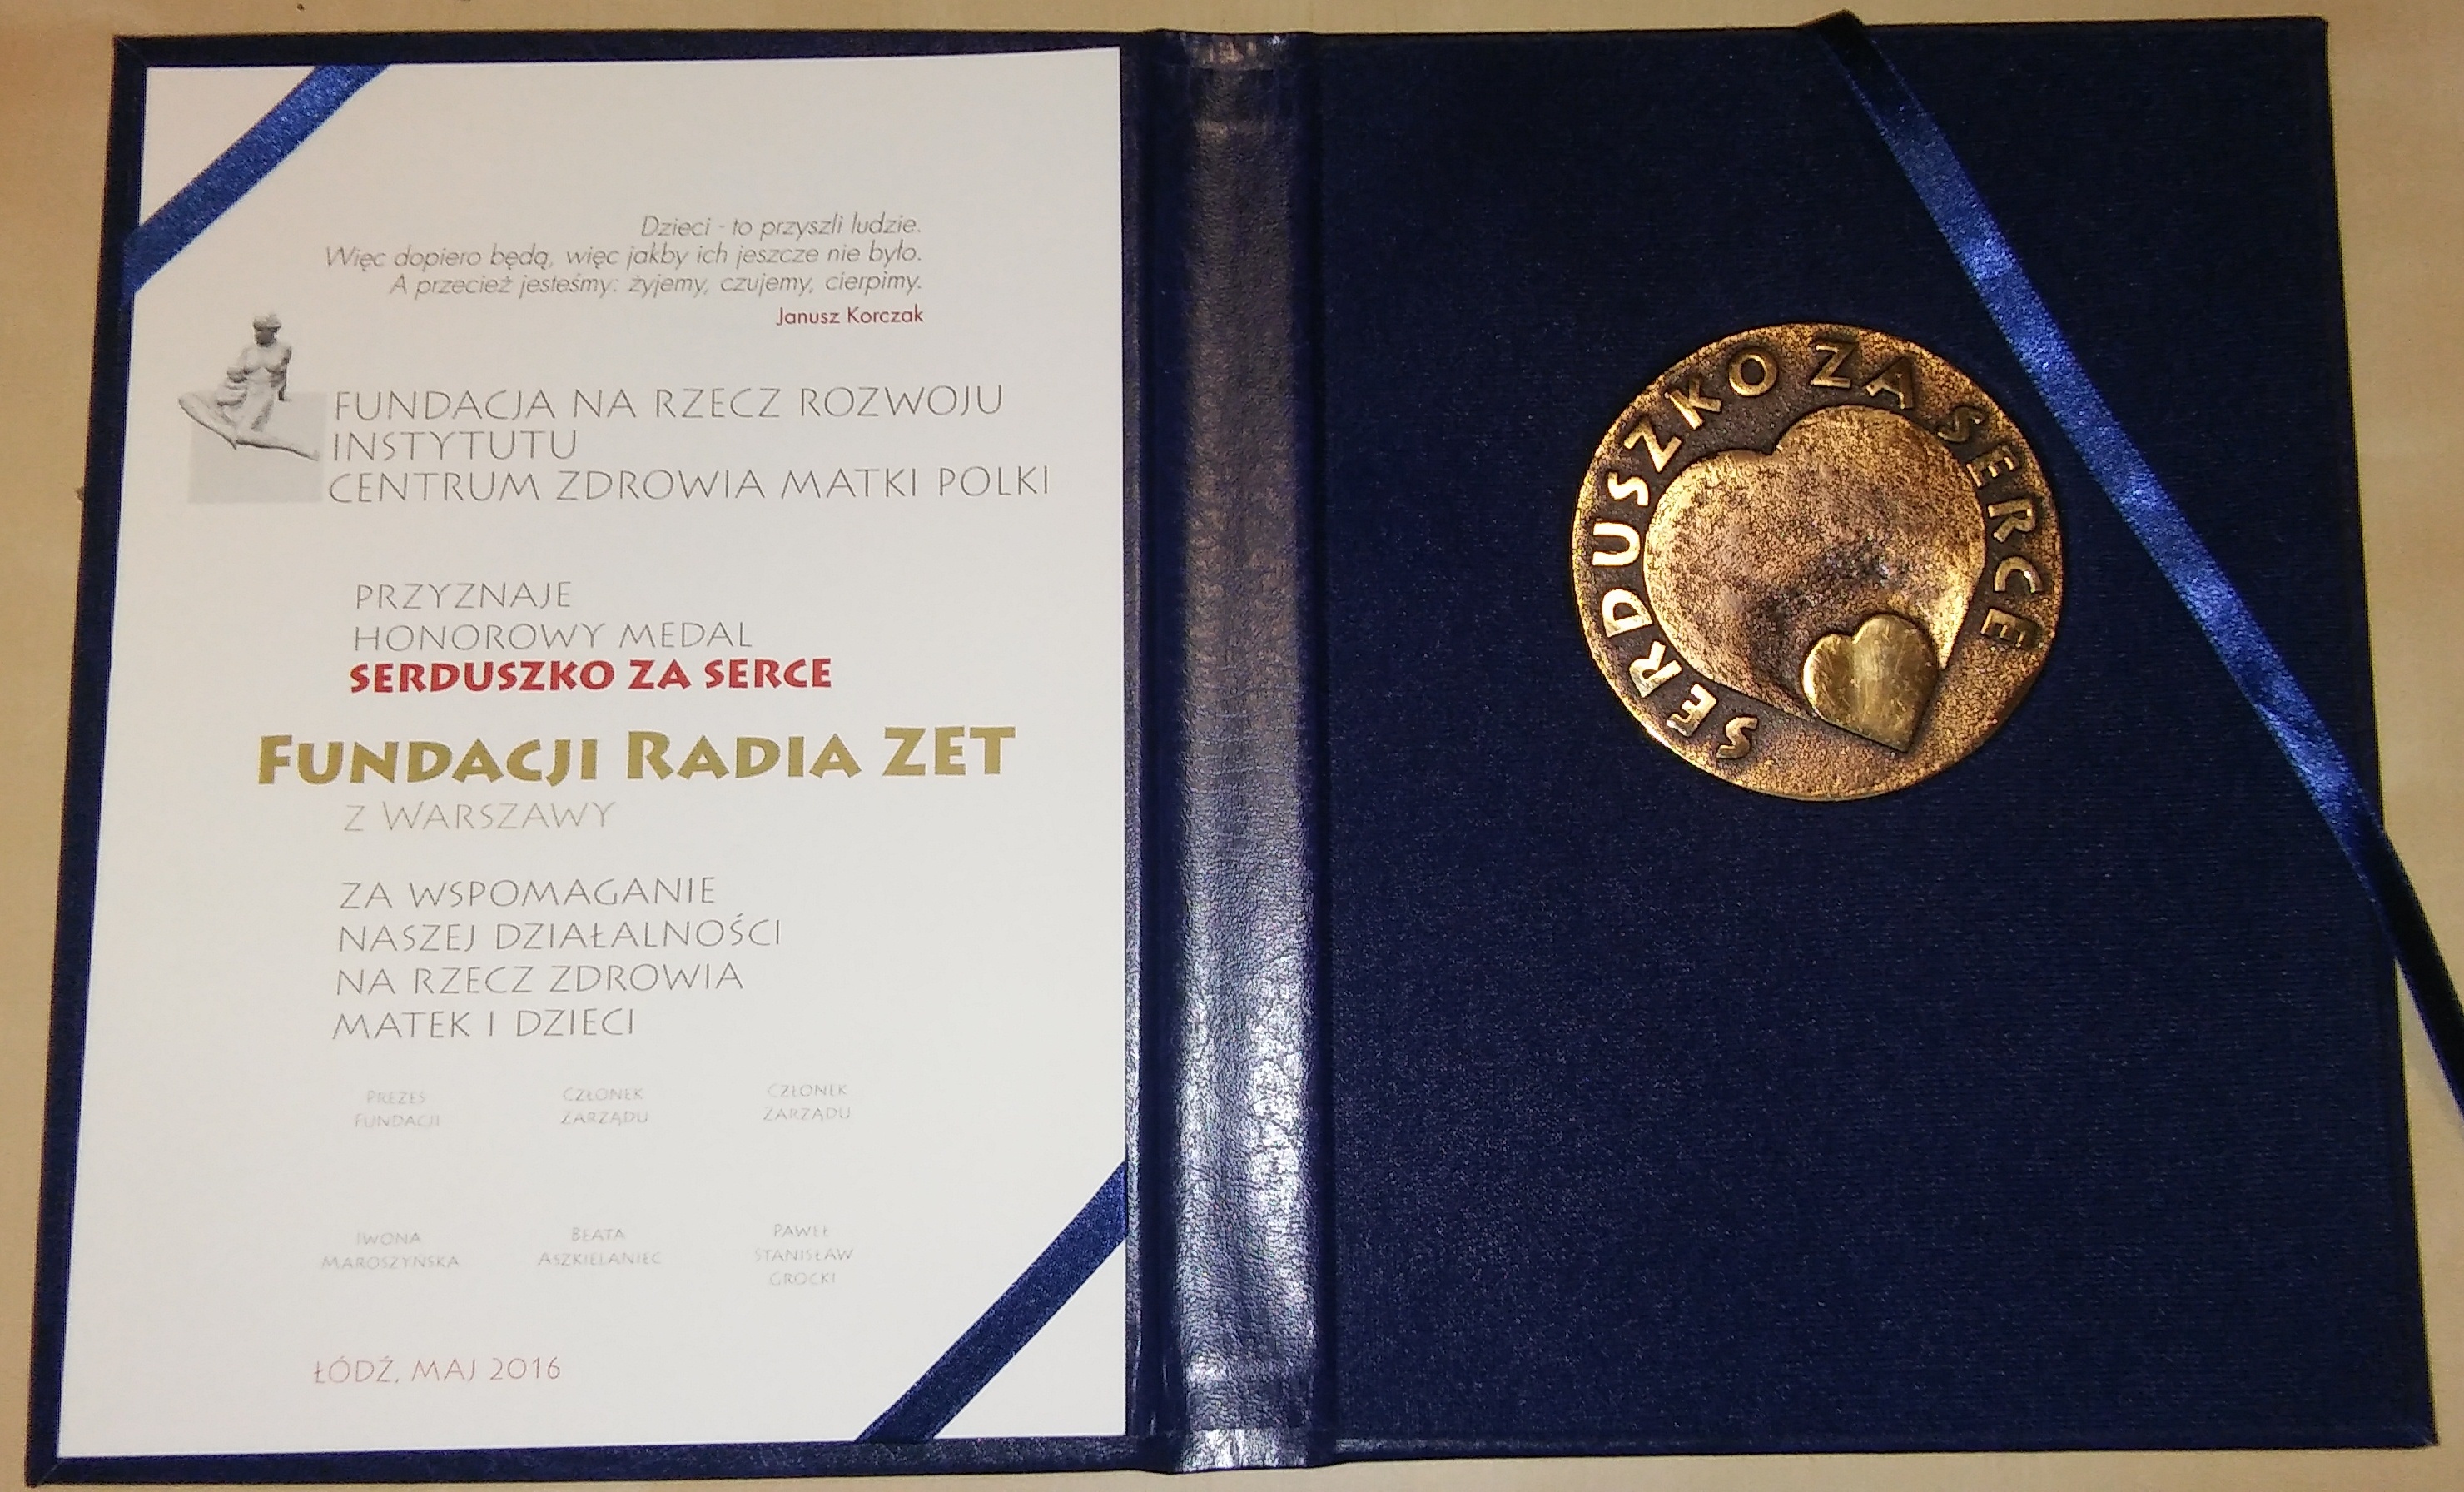 Dyplom i medal "Serduszko za serce" dla Fundacji Radia ZET